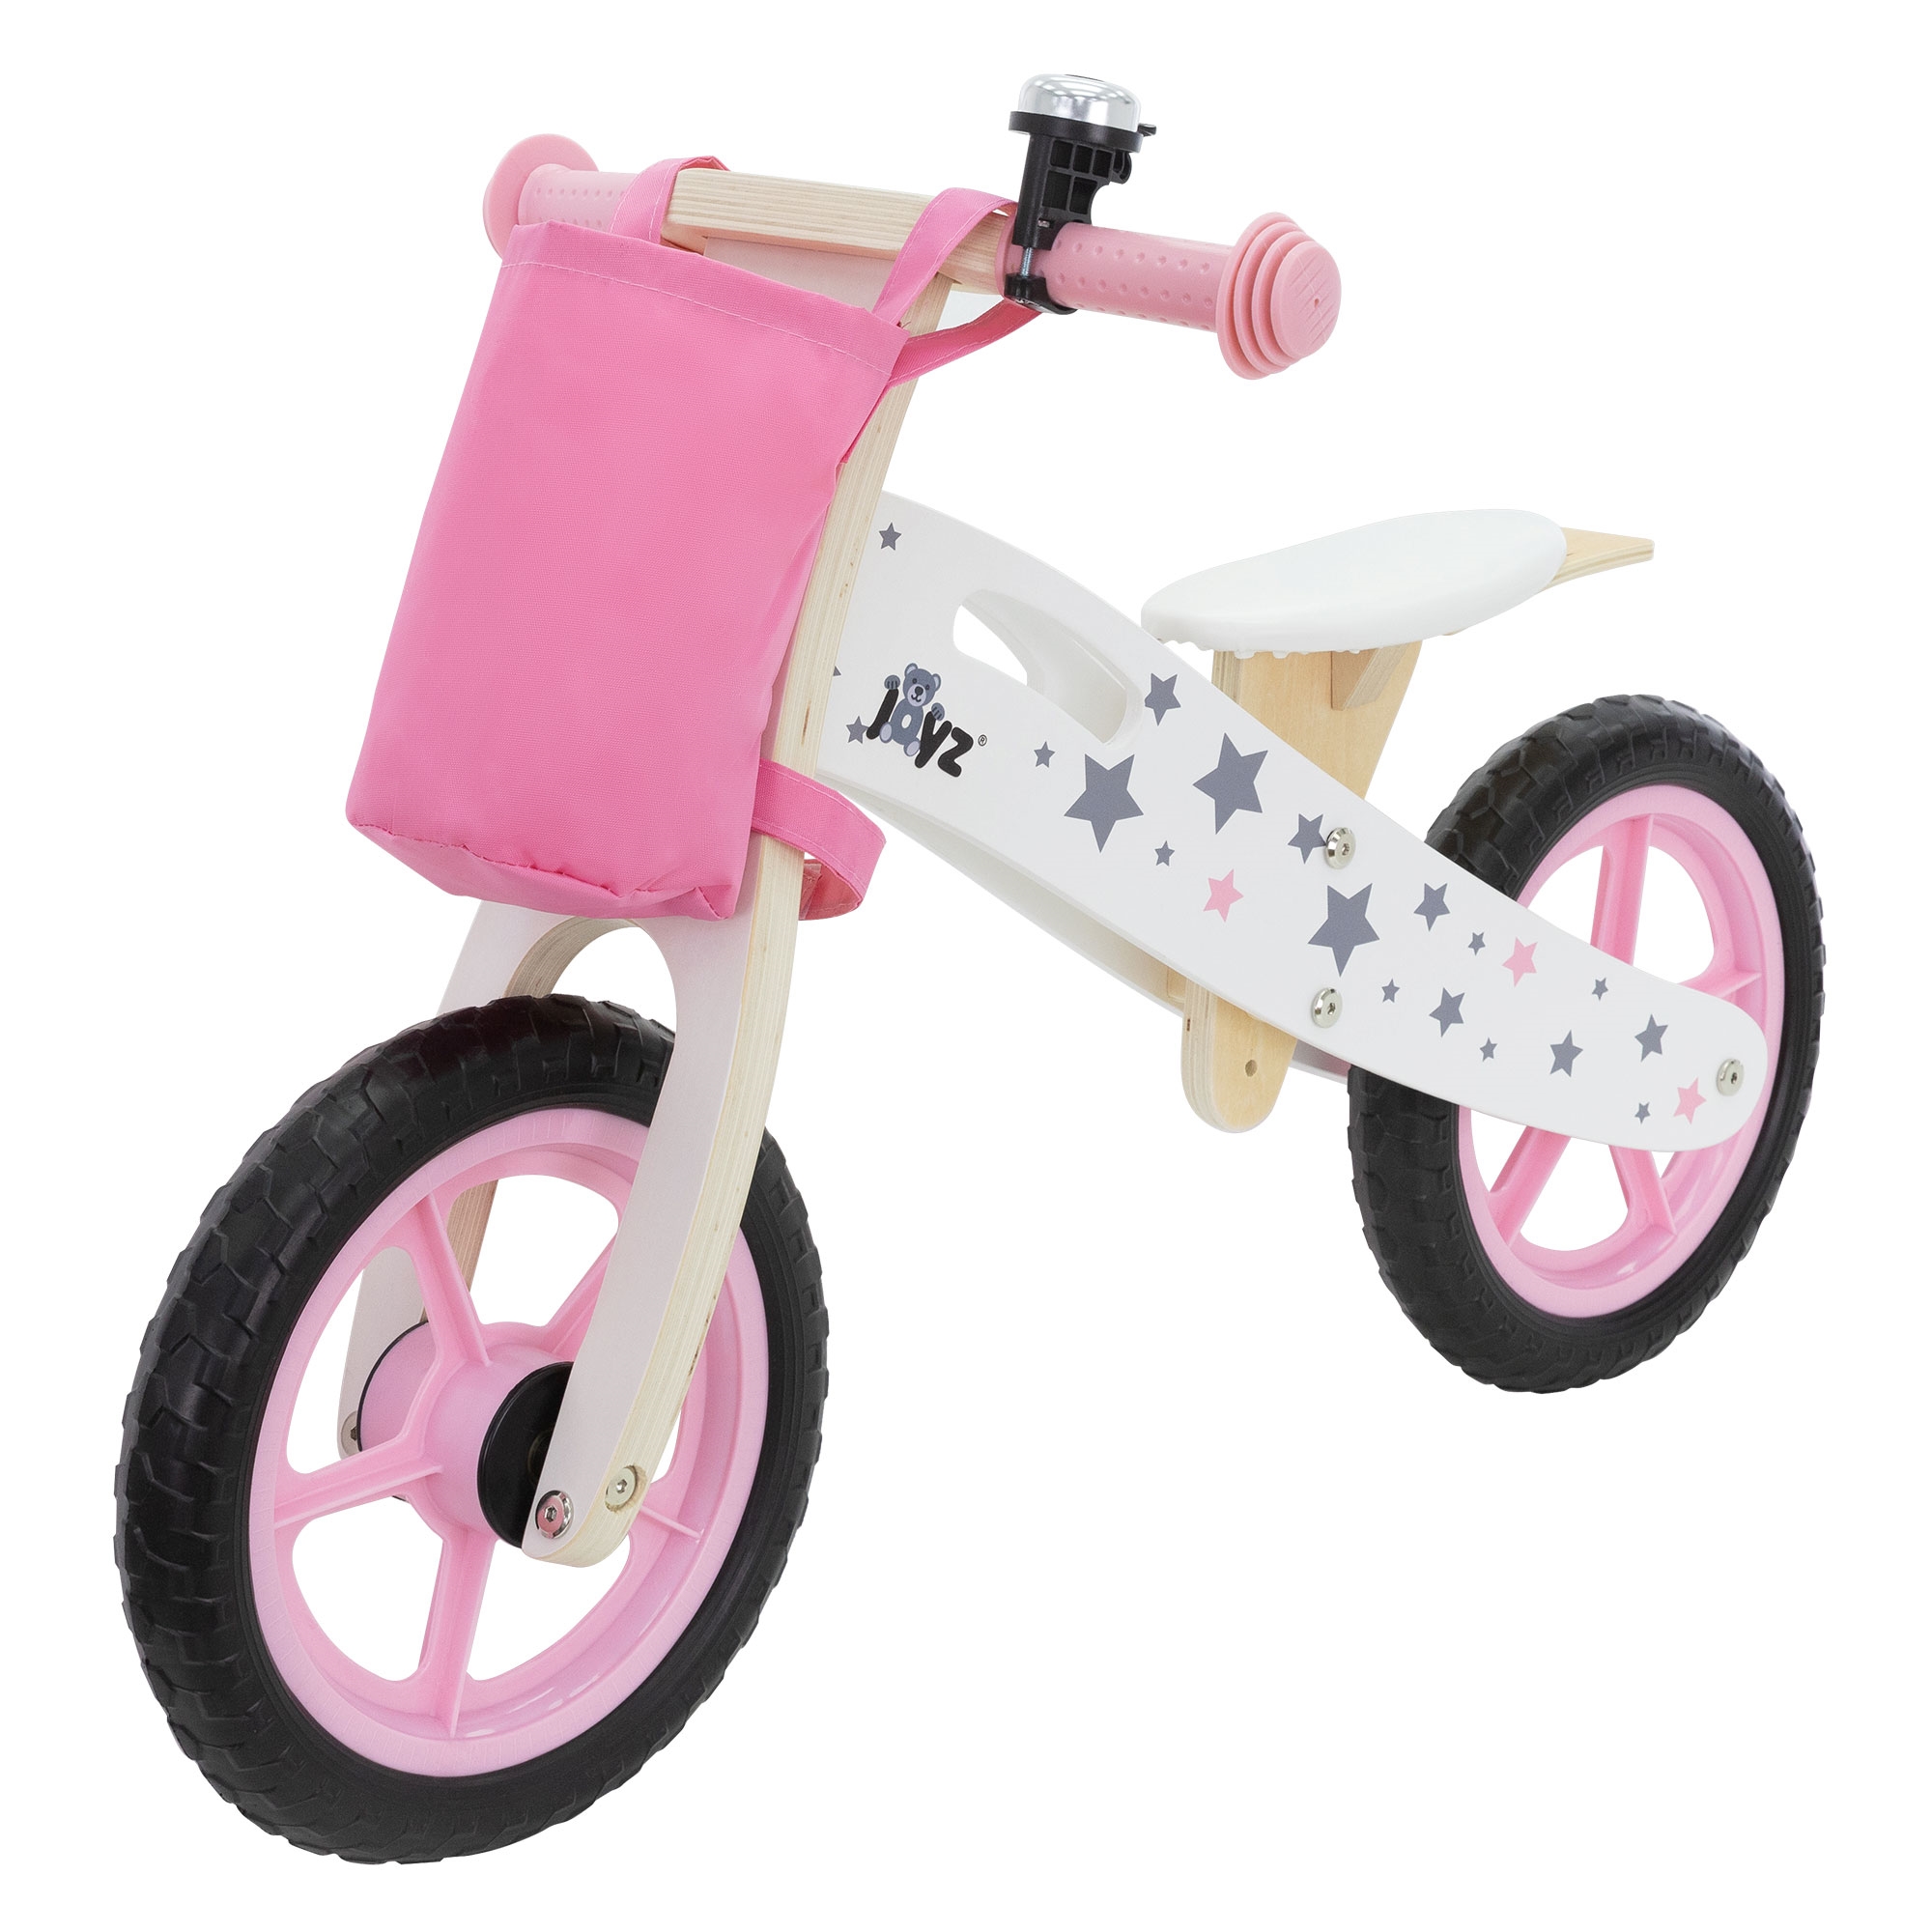 Bicicleta De Madera Joyz Para Niños A Partir De 2 Años Con Asiento Ajustable - rosa - 